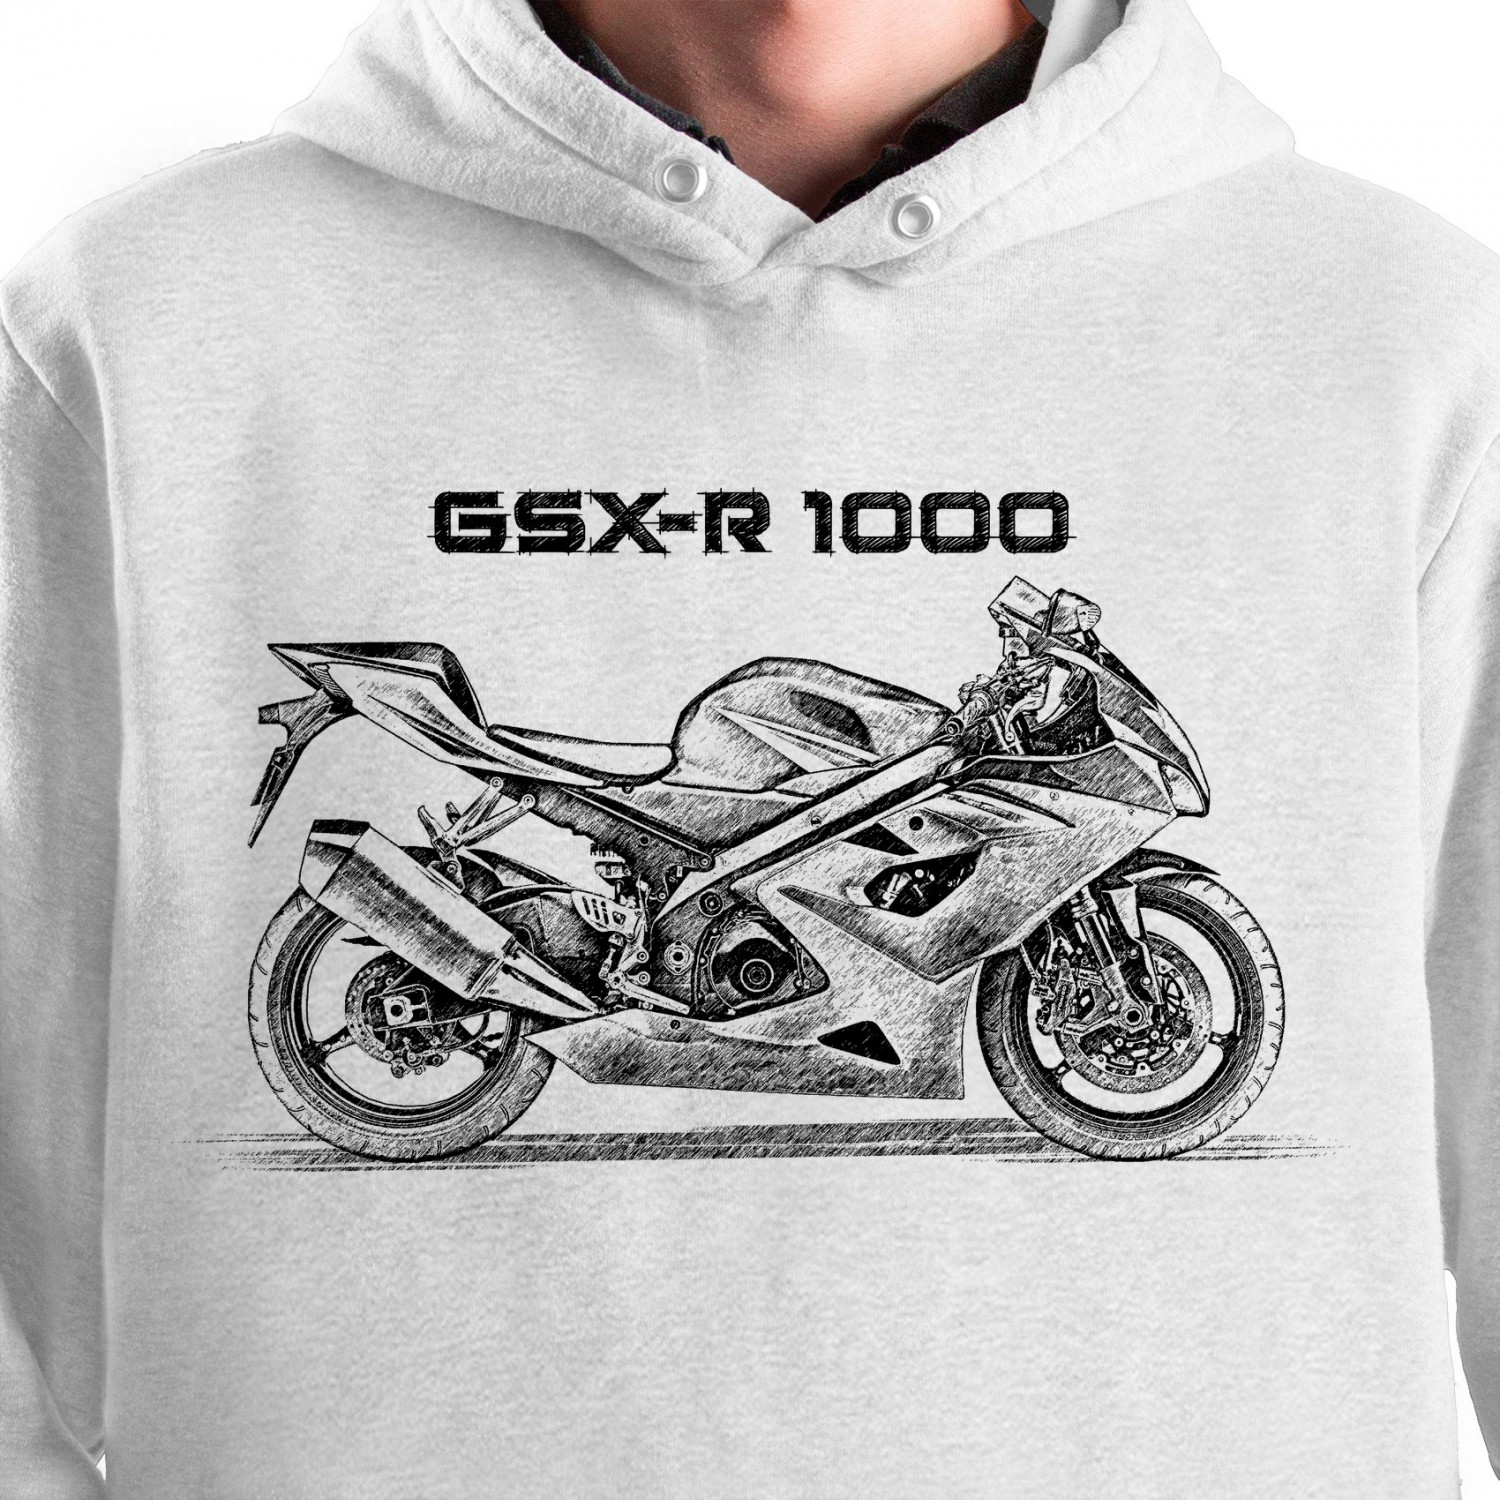 White T-shirt with Suzuki GSX-R 1000. Gift for motorcyclist.